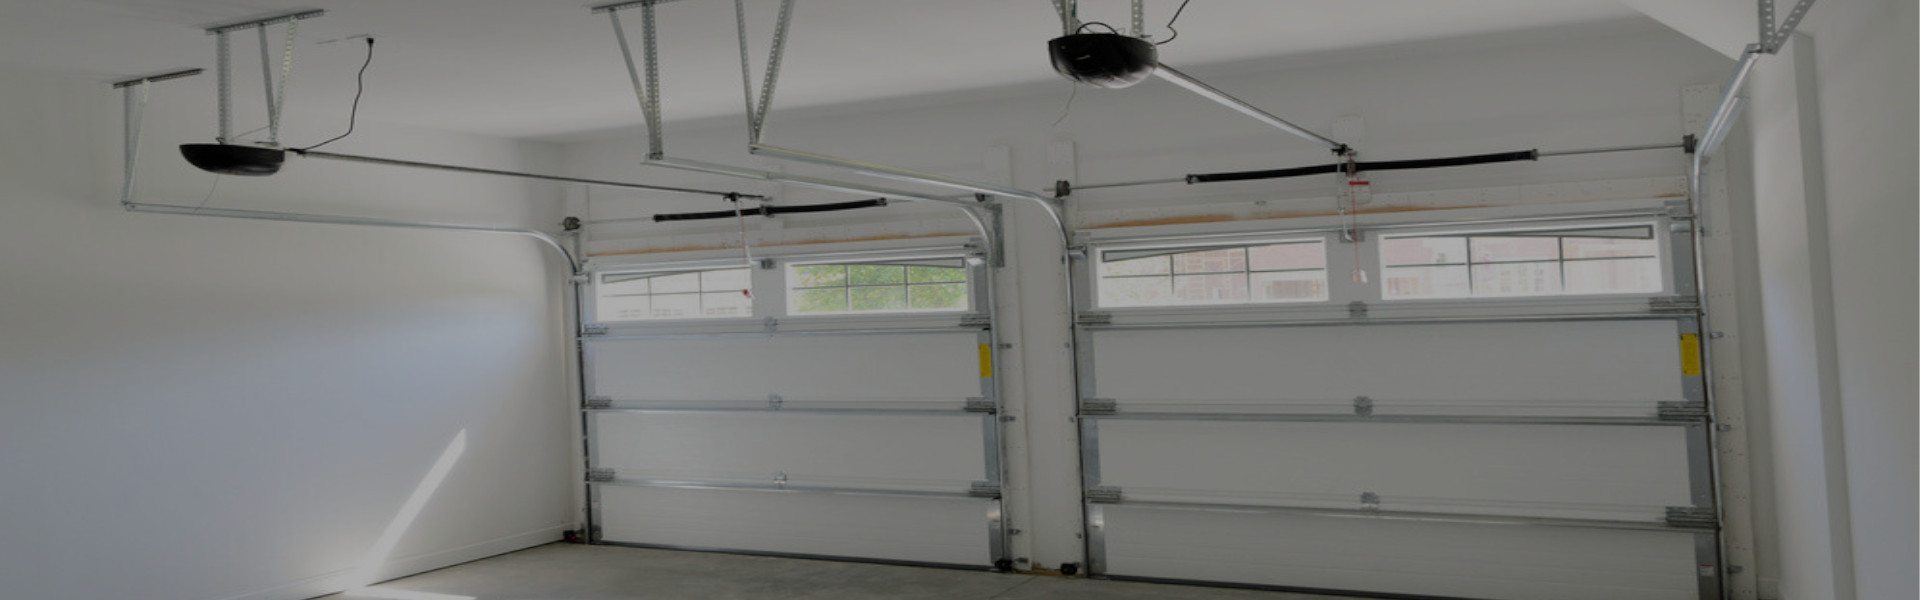 Slider Garage Door Repair, Glaziers in Hanwell, W7